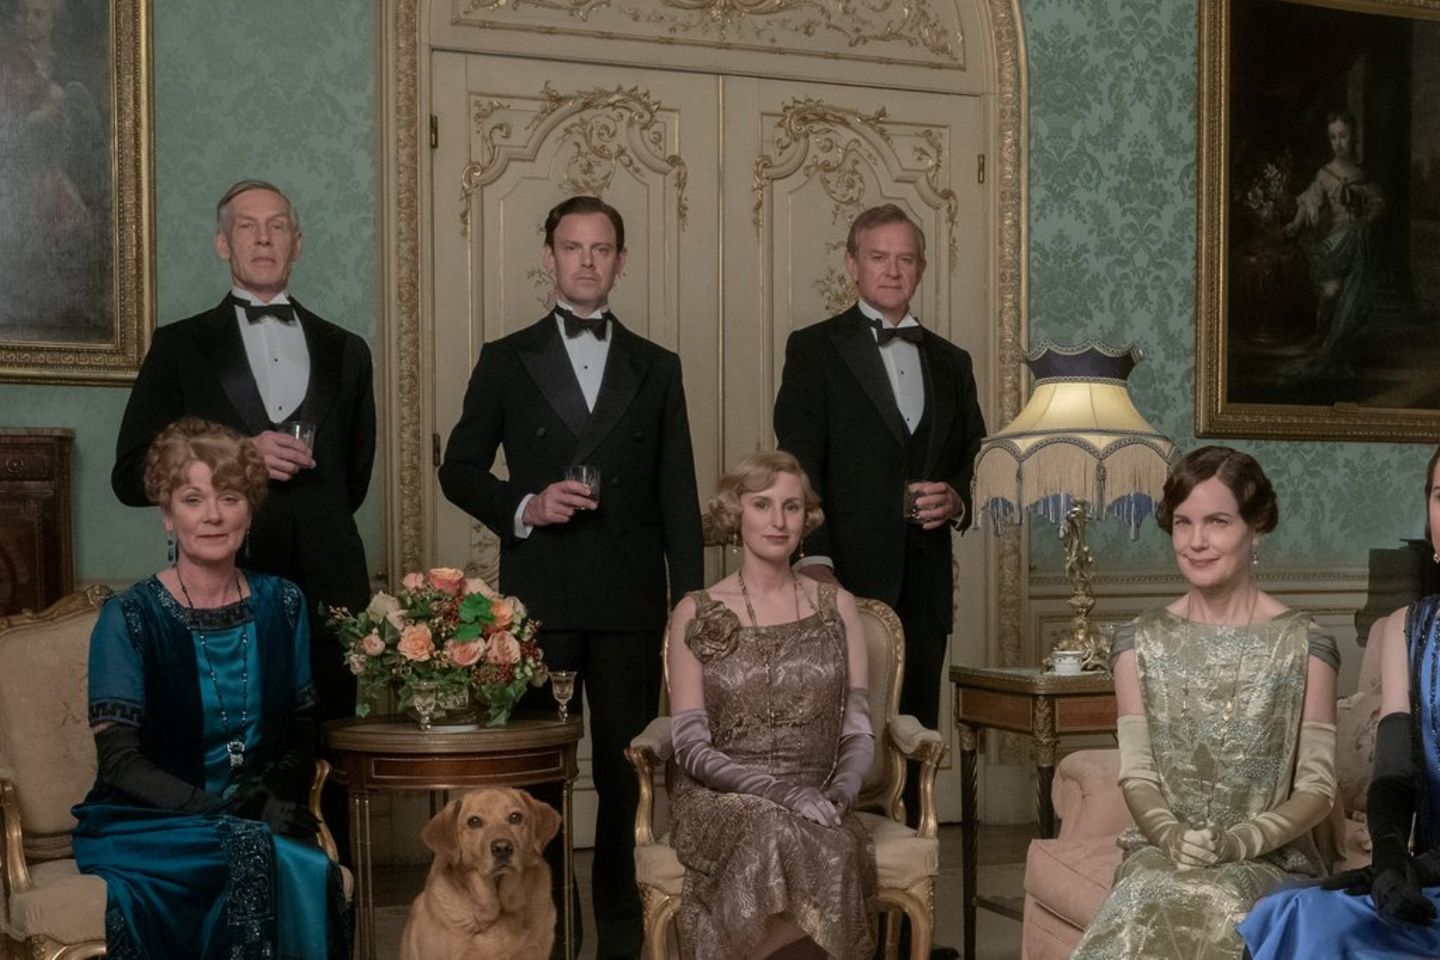 Ein neuer "Downton Abbey"-Film befindet sich in der Produktion.